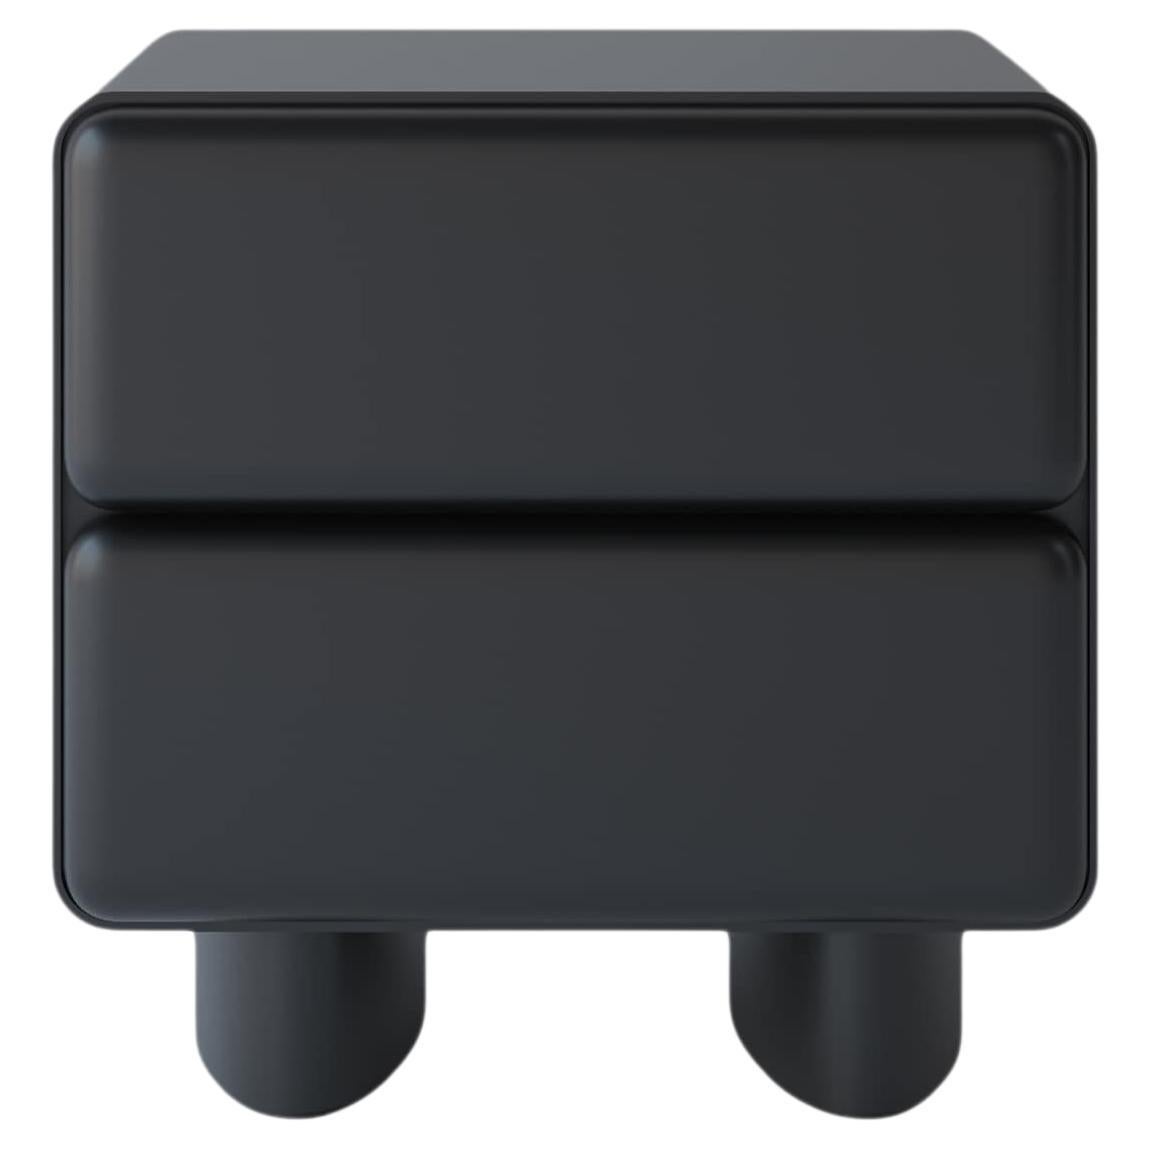 Table de nuit Tombul à 2 tiroirs avec mécanisme de boutonnage, couleur noire